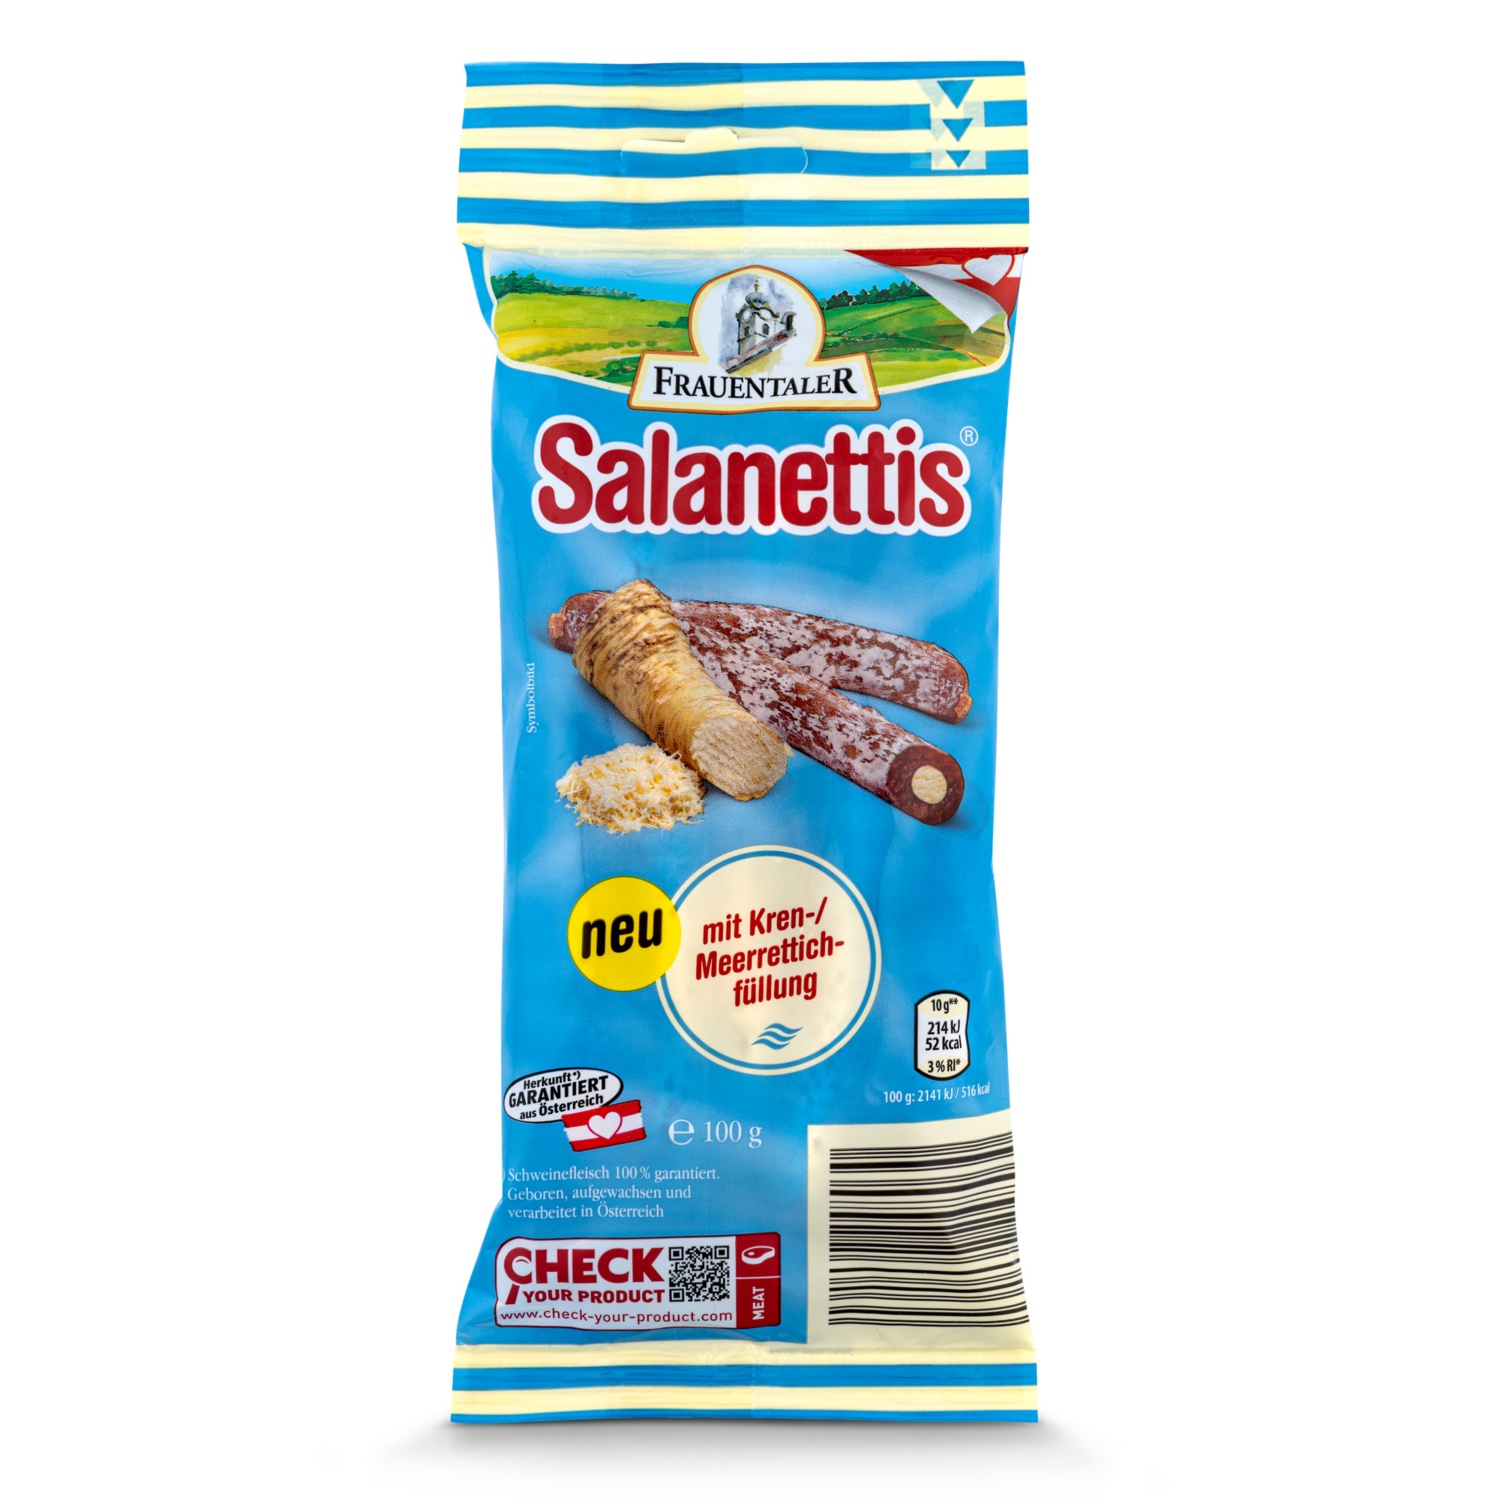 GENUSS 100% aus Österreich Gefüllte Salanettis, Kren